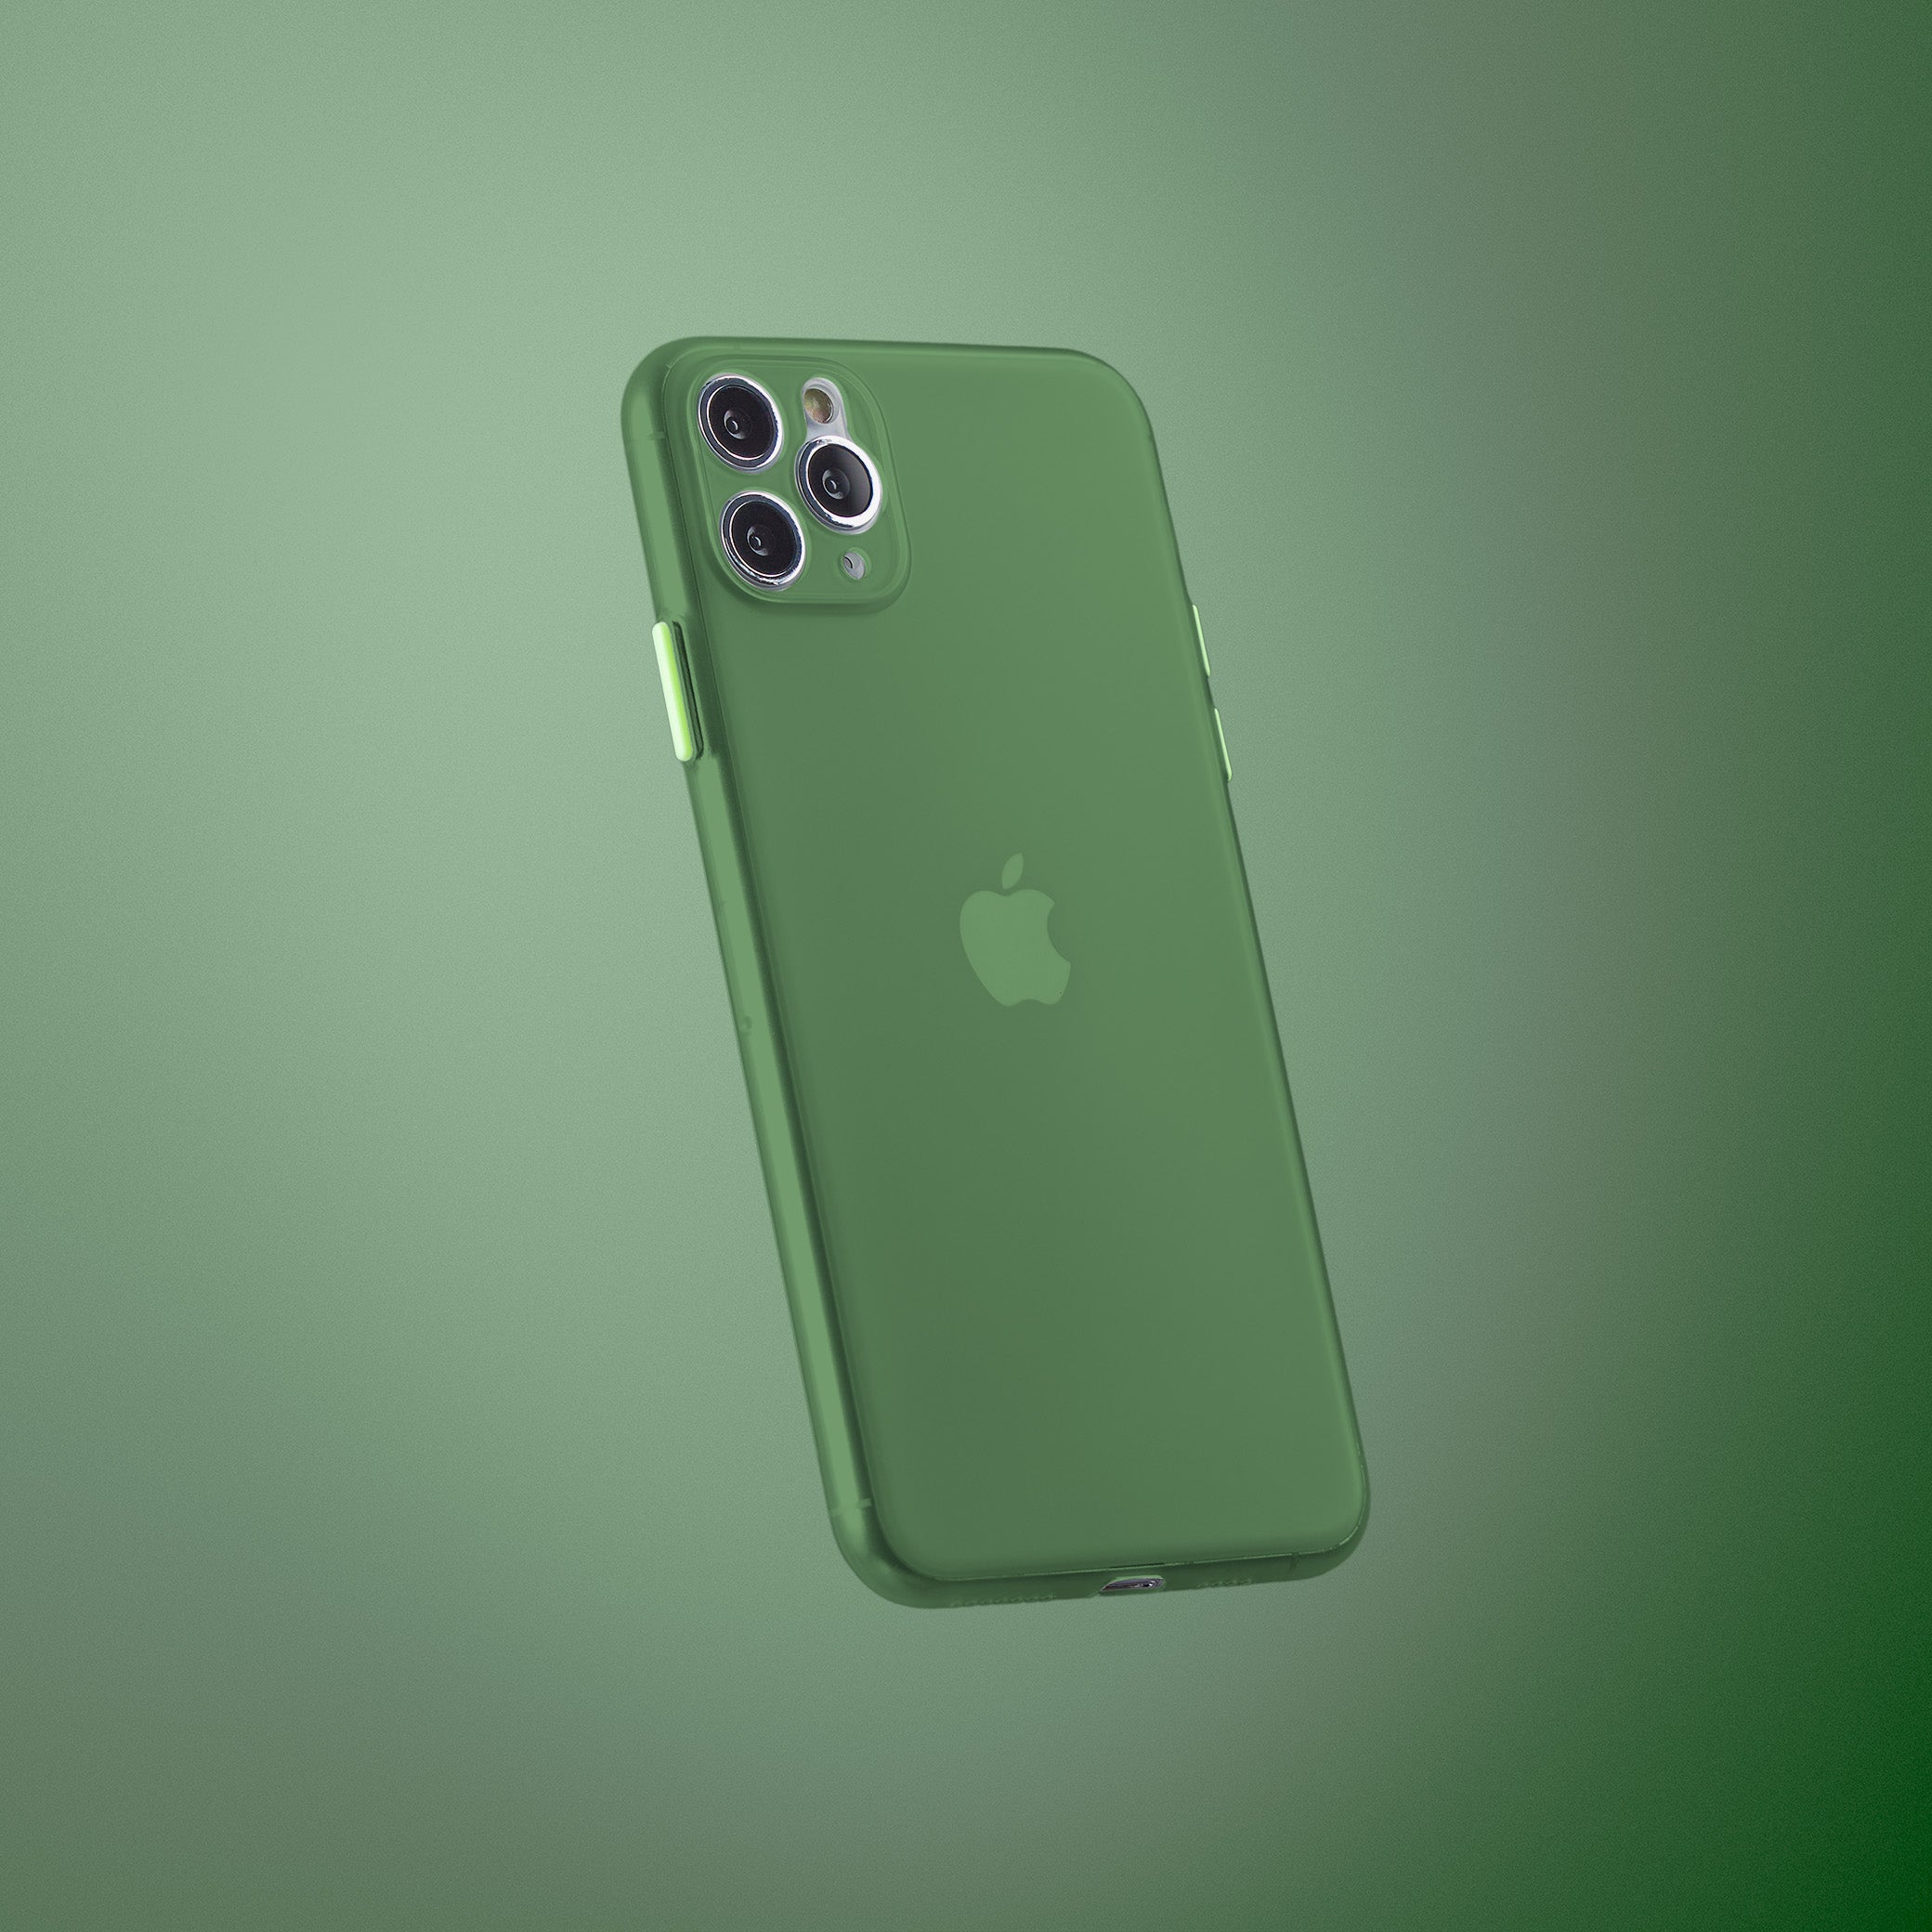 Super Slim Case 2.0 for iPhone 11 Pro Max - Avacado Green